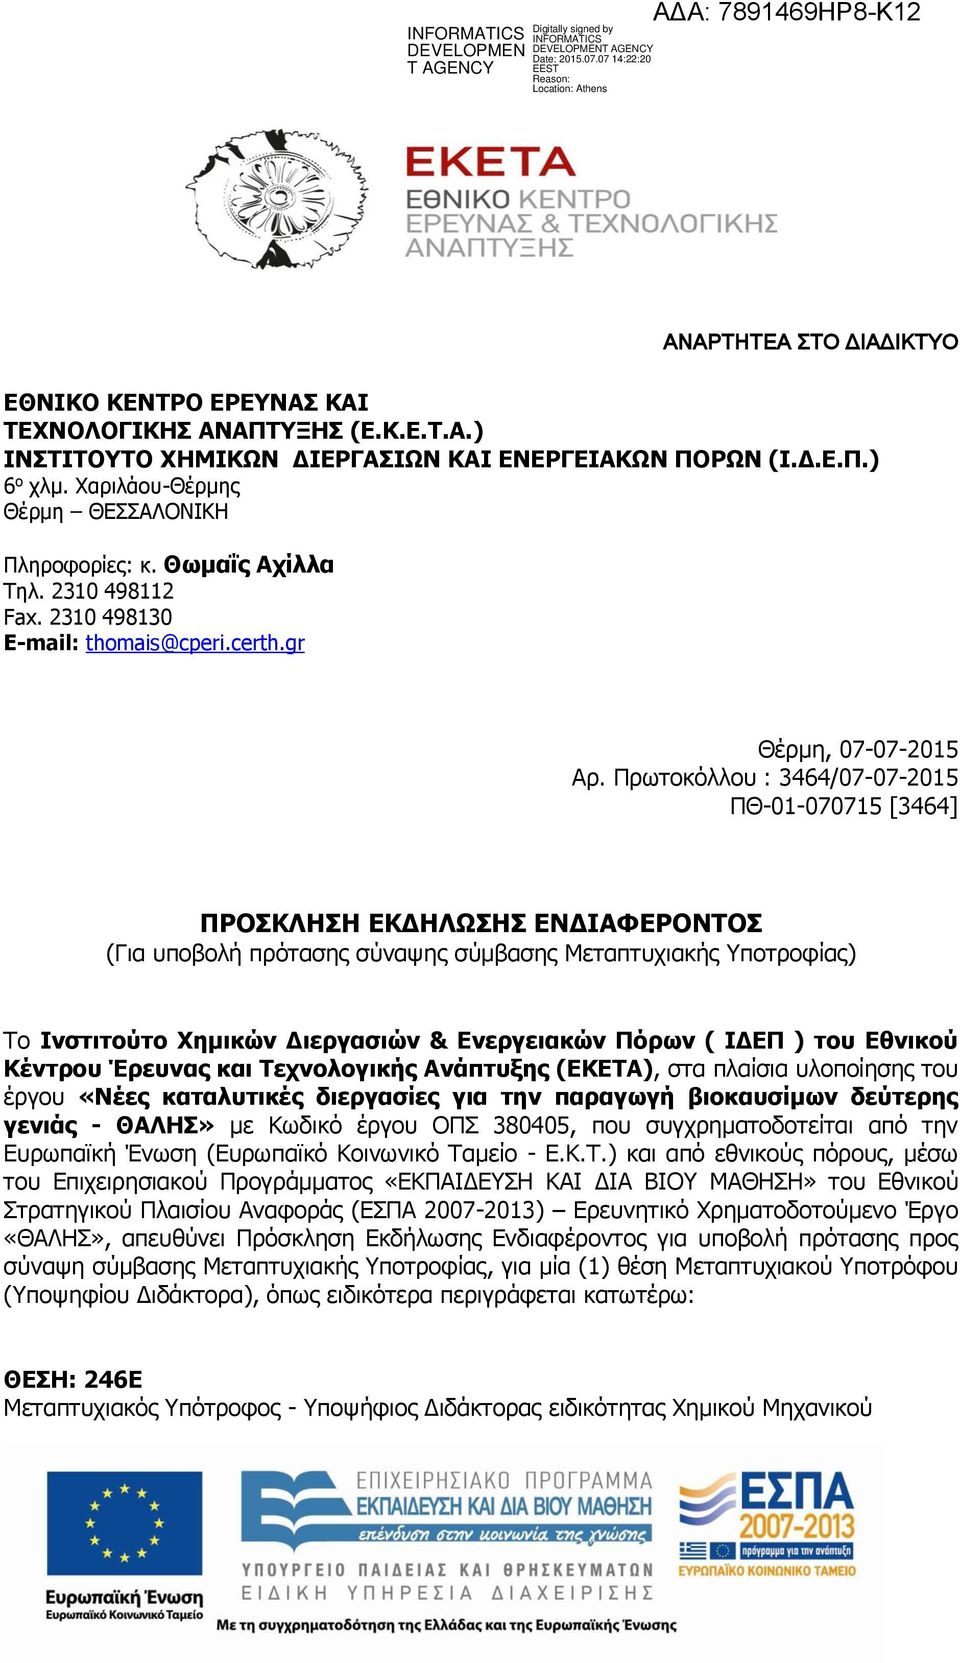 Πρωτοκόλλου : 3464/07-07-2015 ΠΘ-01-070715 [3464] ΠΡΟΣΚΛΗΣΗ ΕΚΔΗΛΩΣΗΣ ΕΝΔΙΑΦΕΡΟΝΤΟΣ (Για υποβολή πρότασης σύναψης σύμβασης Μεταπτυχιακής Υποτροφίας) Το Ινστιτούτο Χημικών Διεργασιών & Ενεργειακών